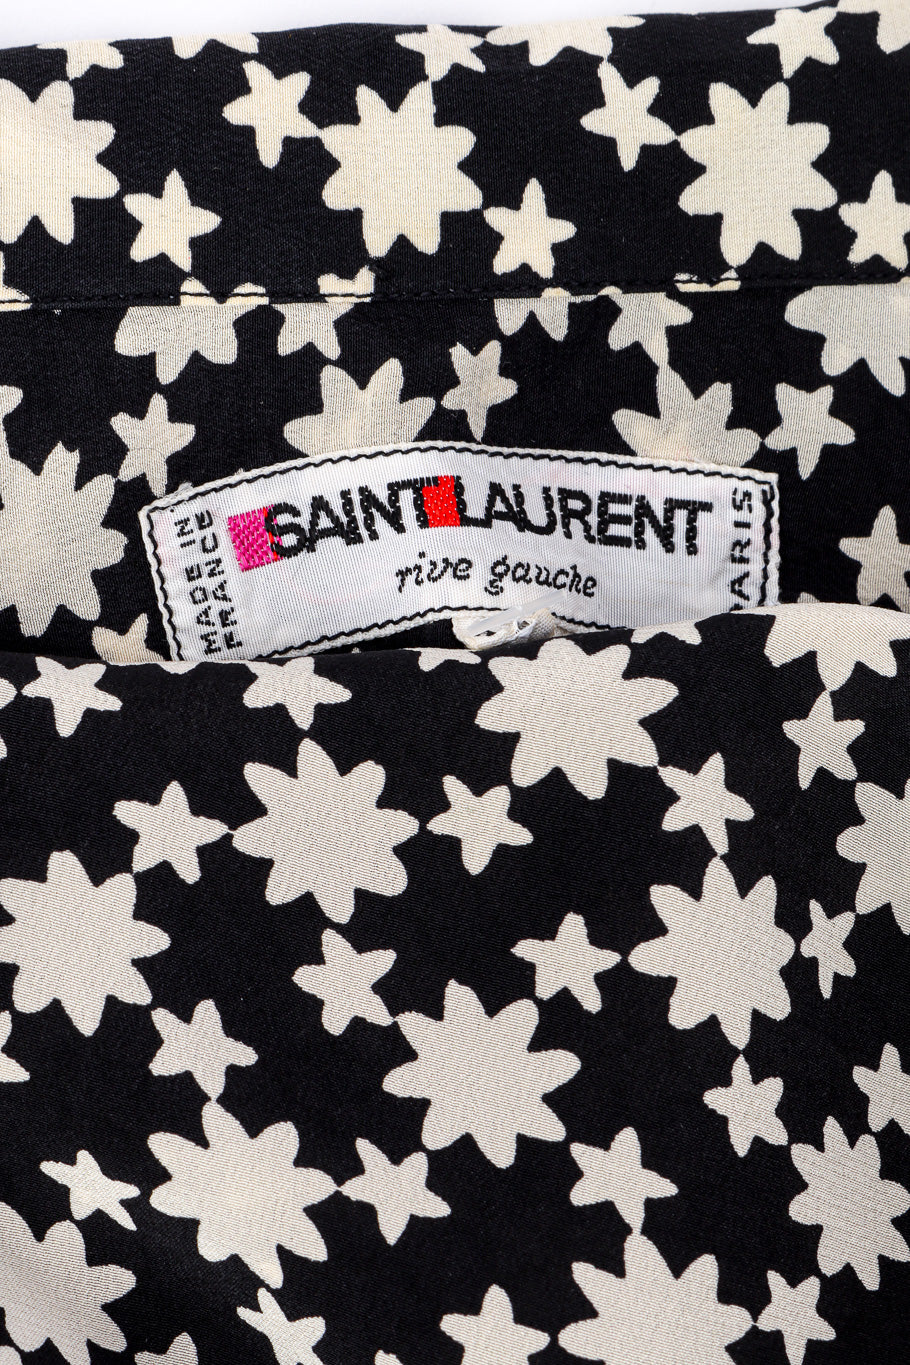 Star print blouse by Yves Saint Laurent label @recessla